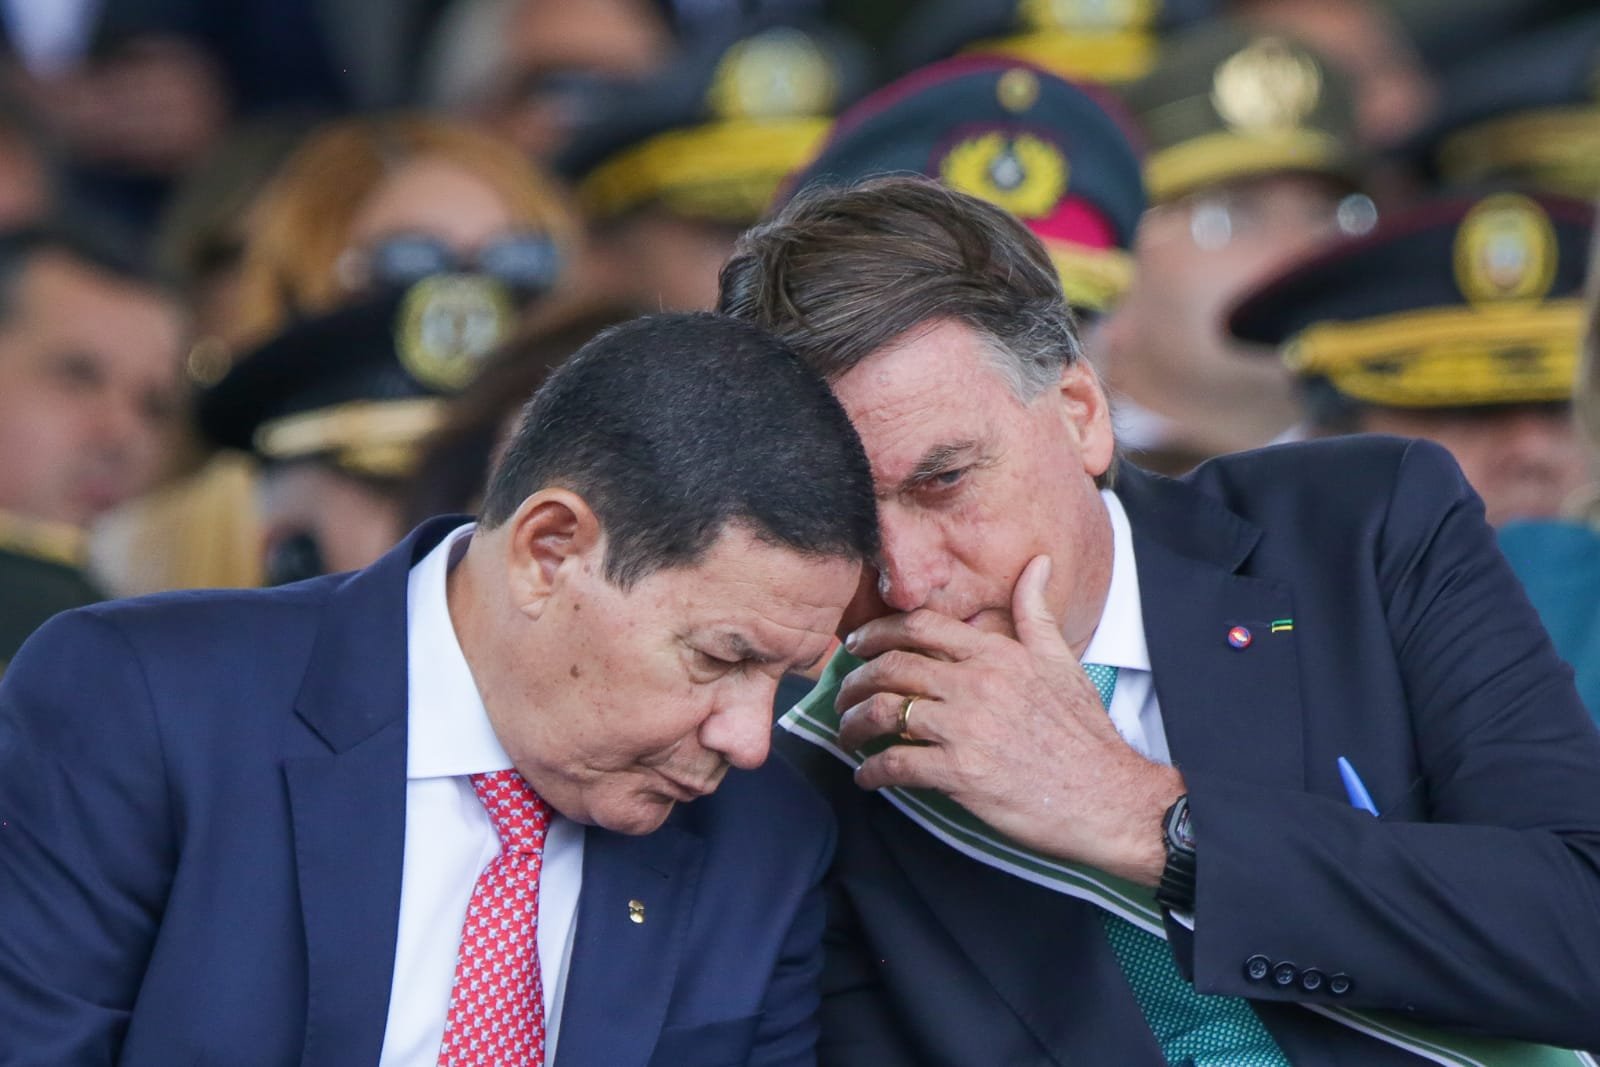 Bolsonaro recua em ataques a Barroso e fala em normalidade na